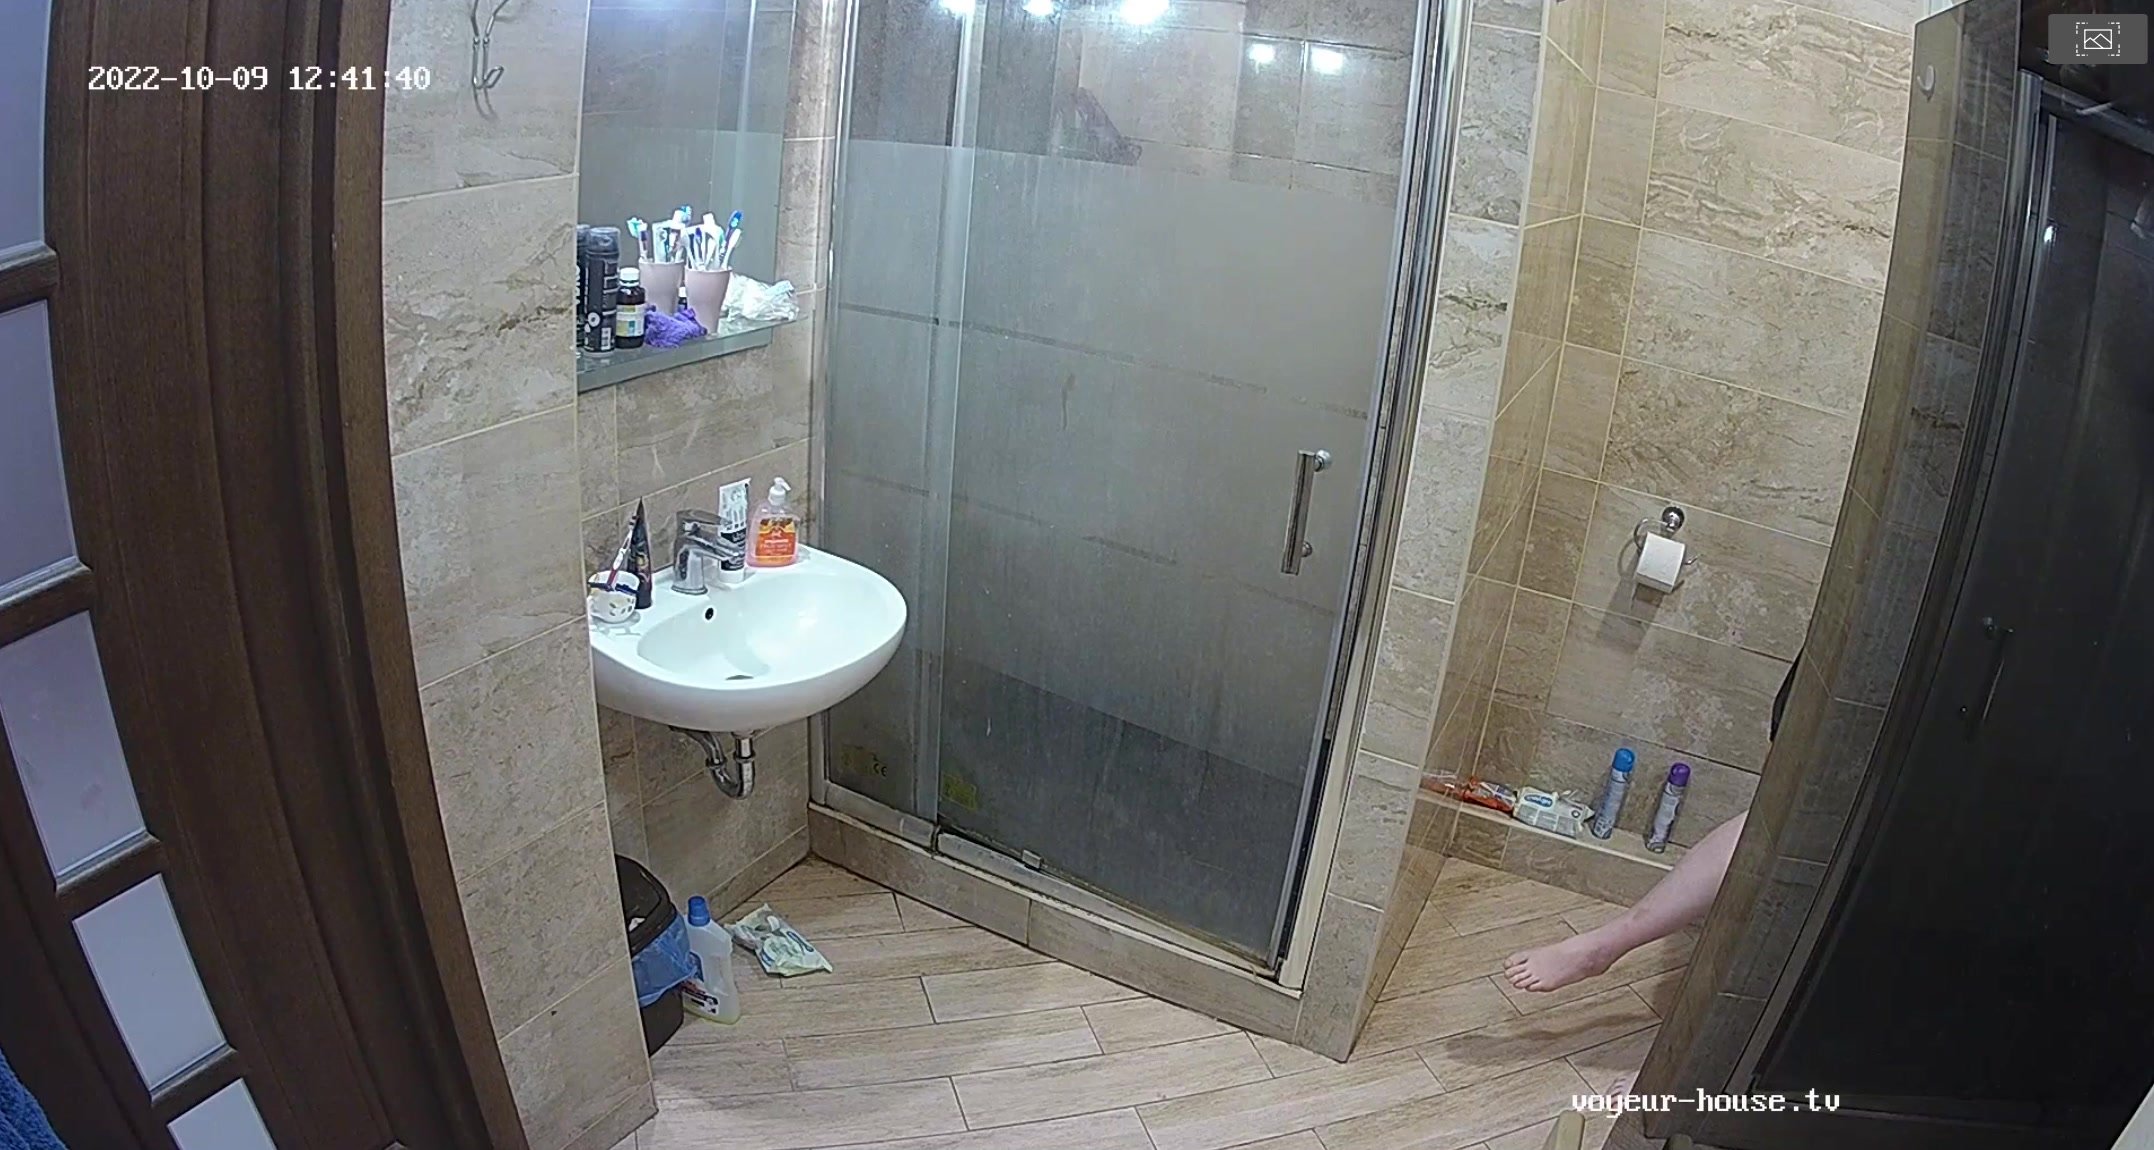 voyerhouse pooping - video 2